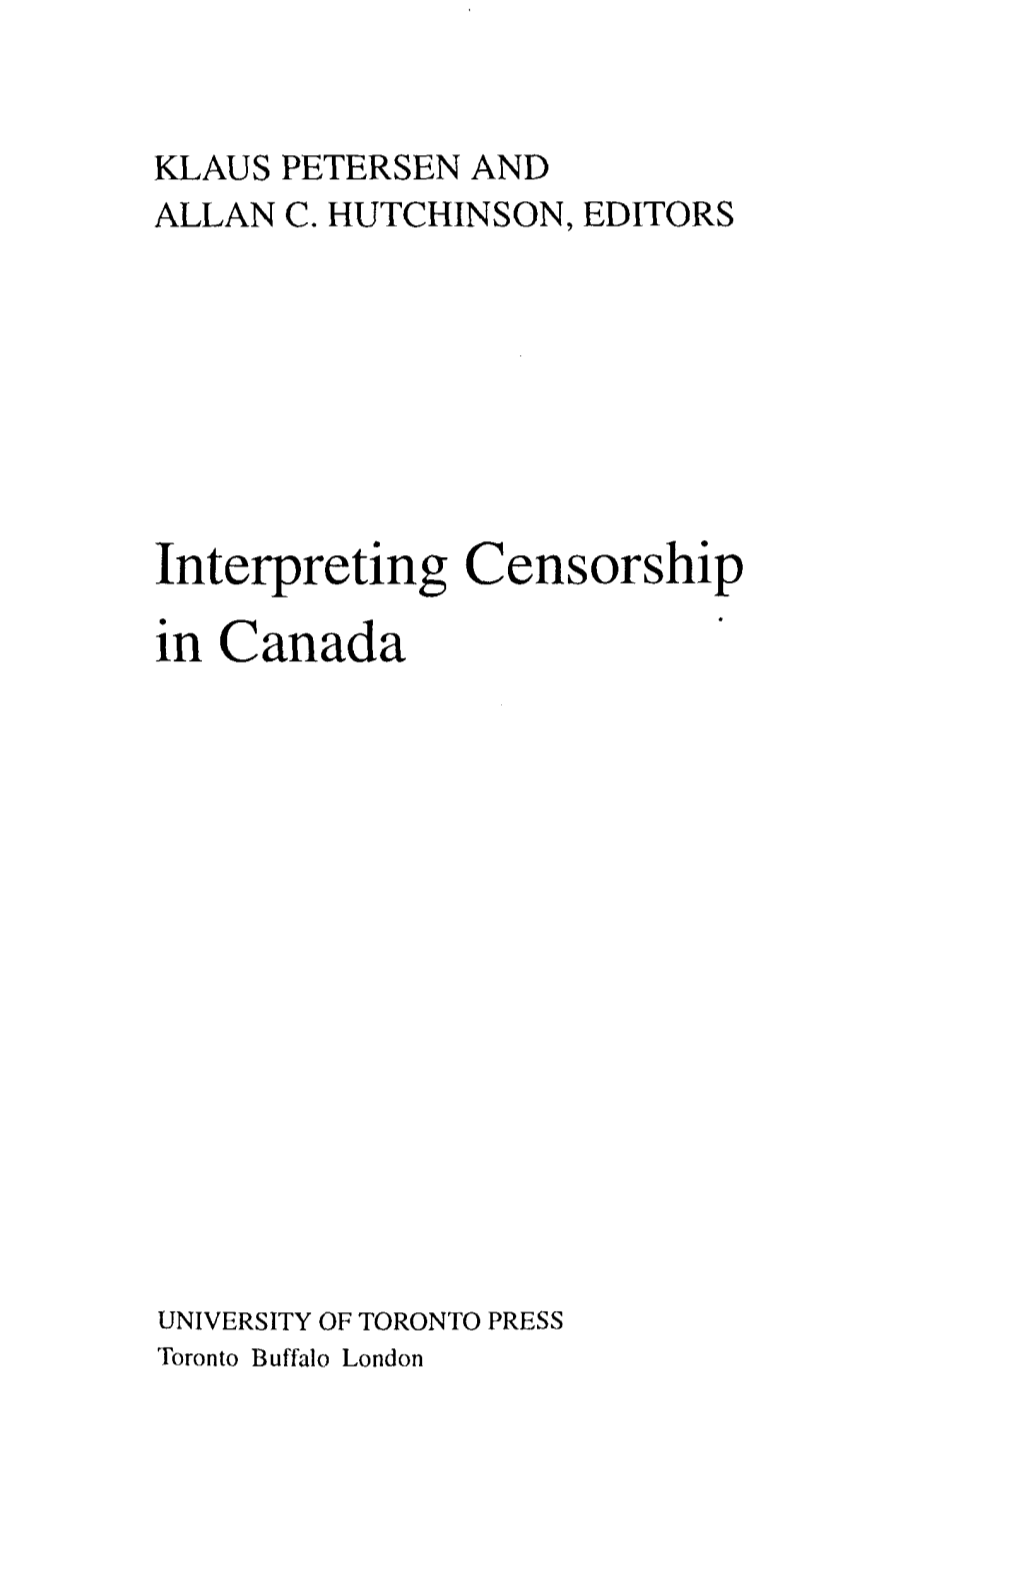 Interpreting Censorship in Canada